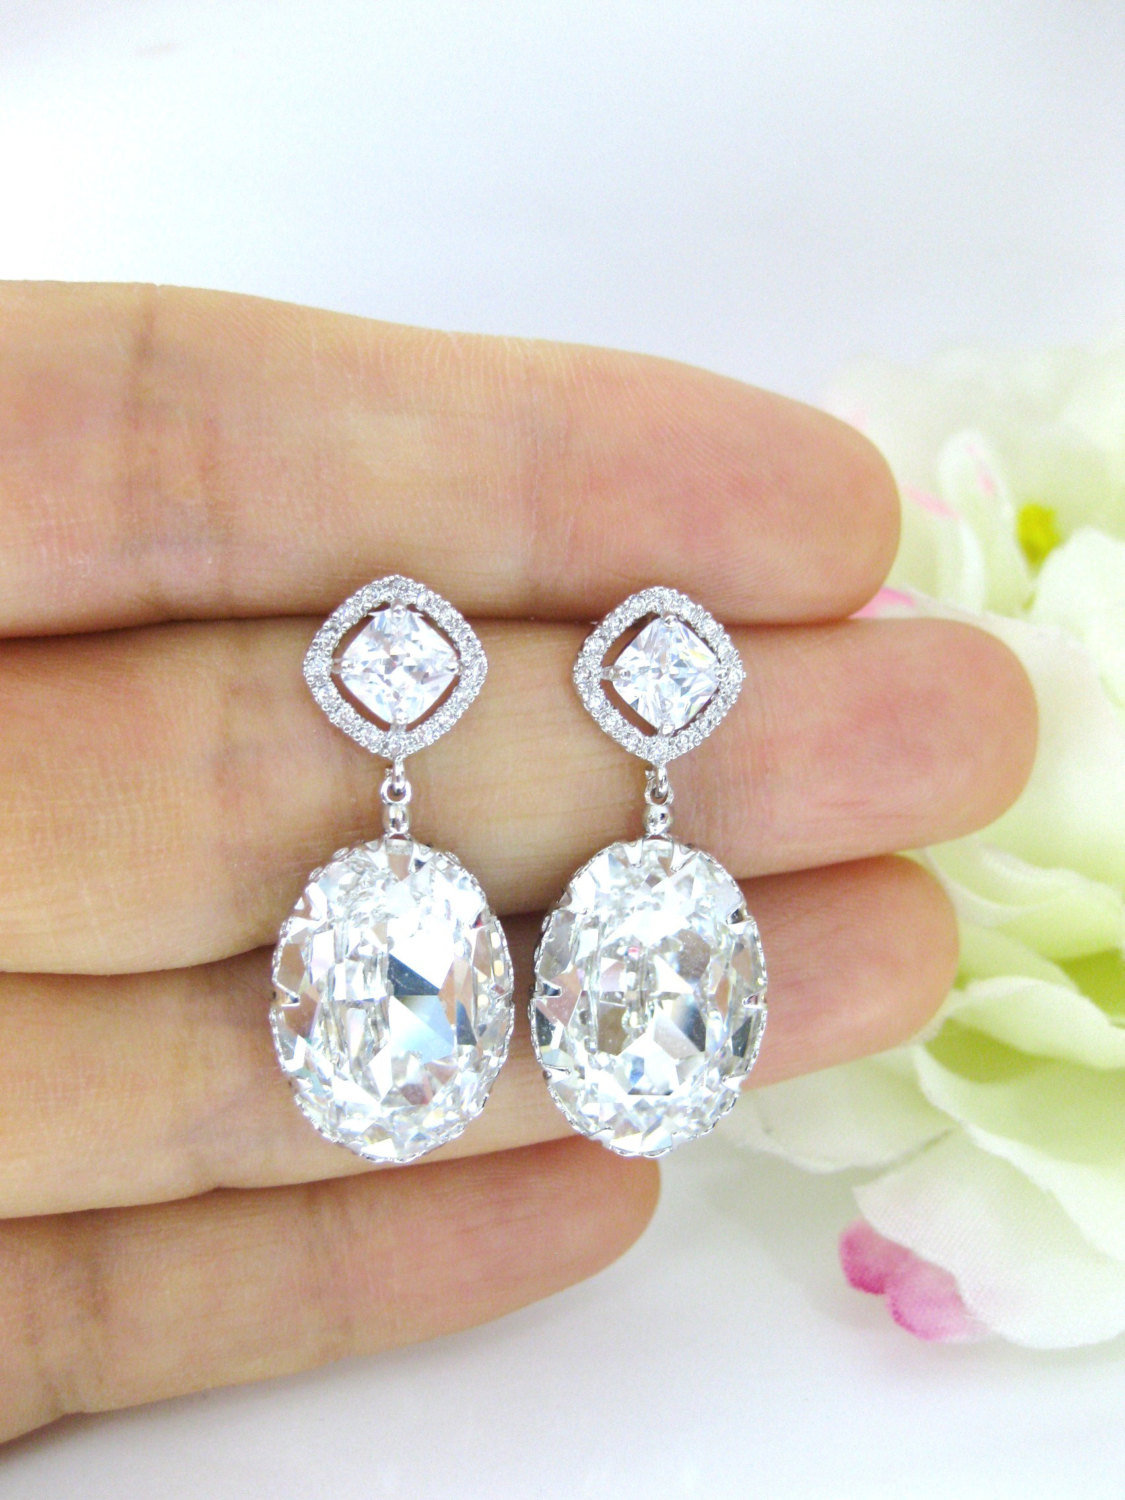 Bridal Clear Crystal Earrings Clear Teardrop Earrings Swarovski Crystal Oval Teardrop Earrings Square Cut Earrings Wedding Earrings (e170)